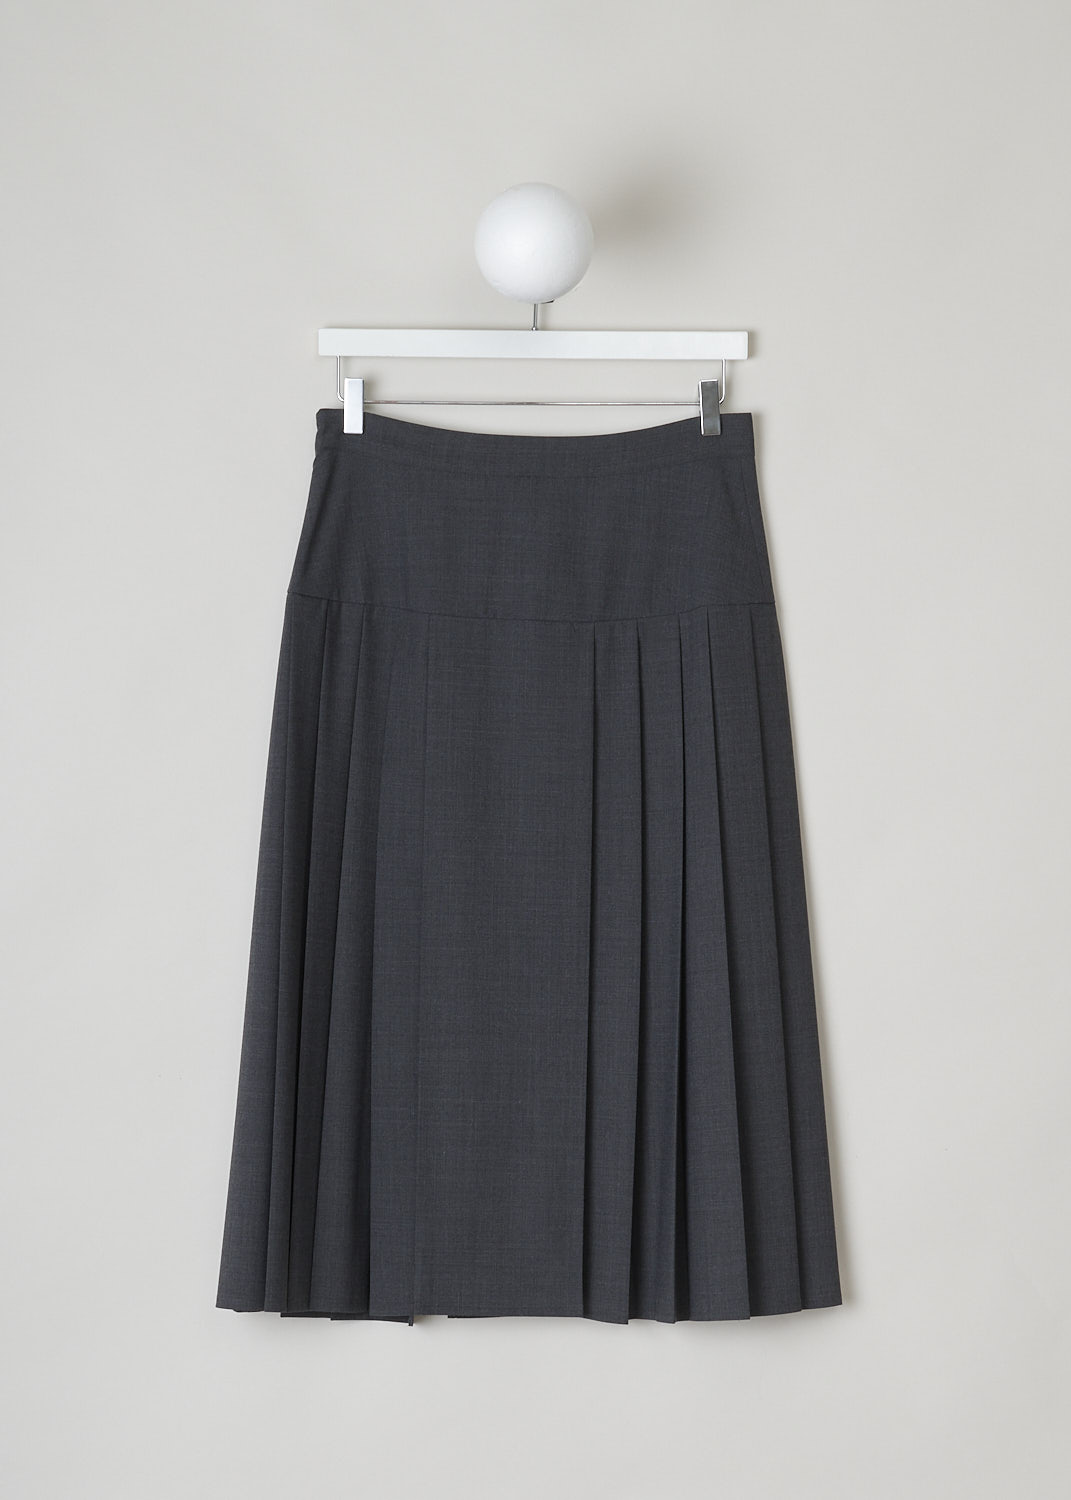 Pinstripe Midi Skirt / Dark Gray Straight Slim Skirt / Fall Winter Work  Skirt / Office Outfit / Tube Skirt/plus Size Skirt/ Below Knee Skirt - Etsy  Australia